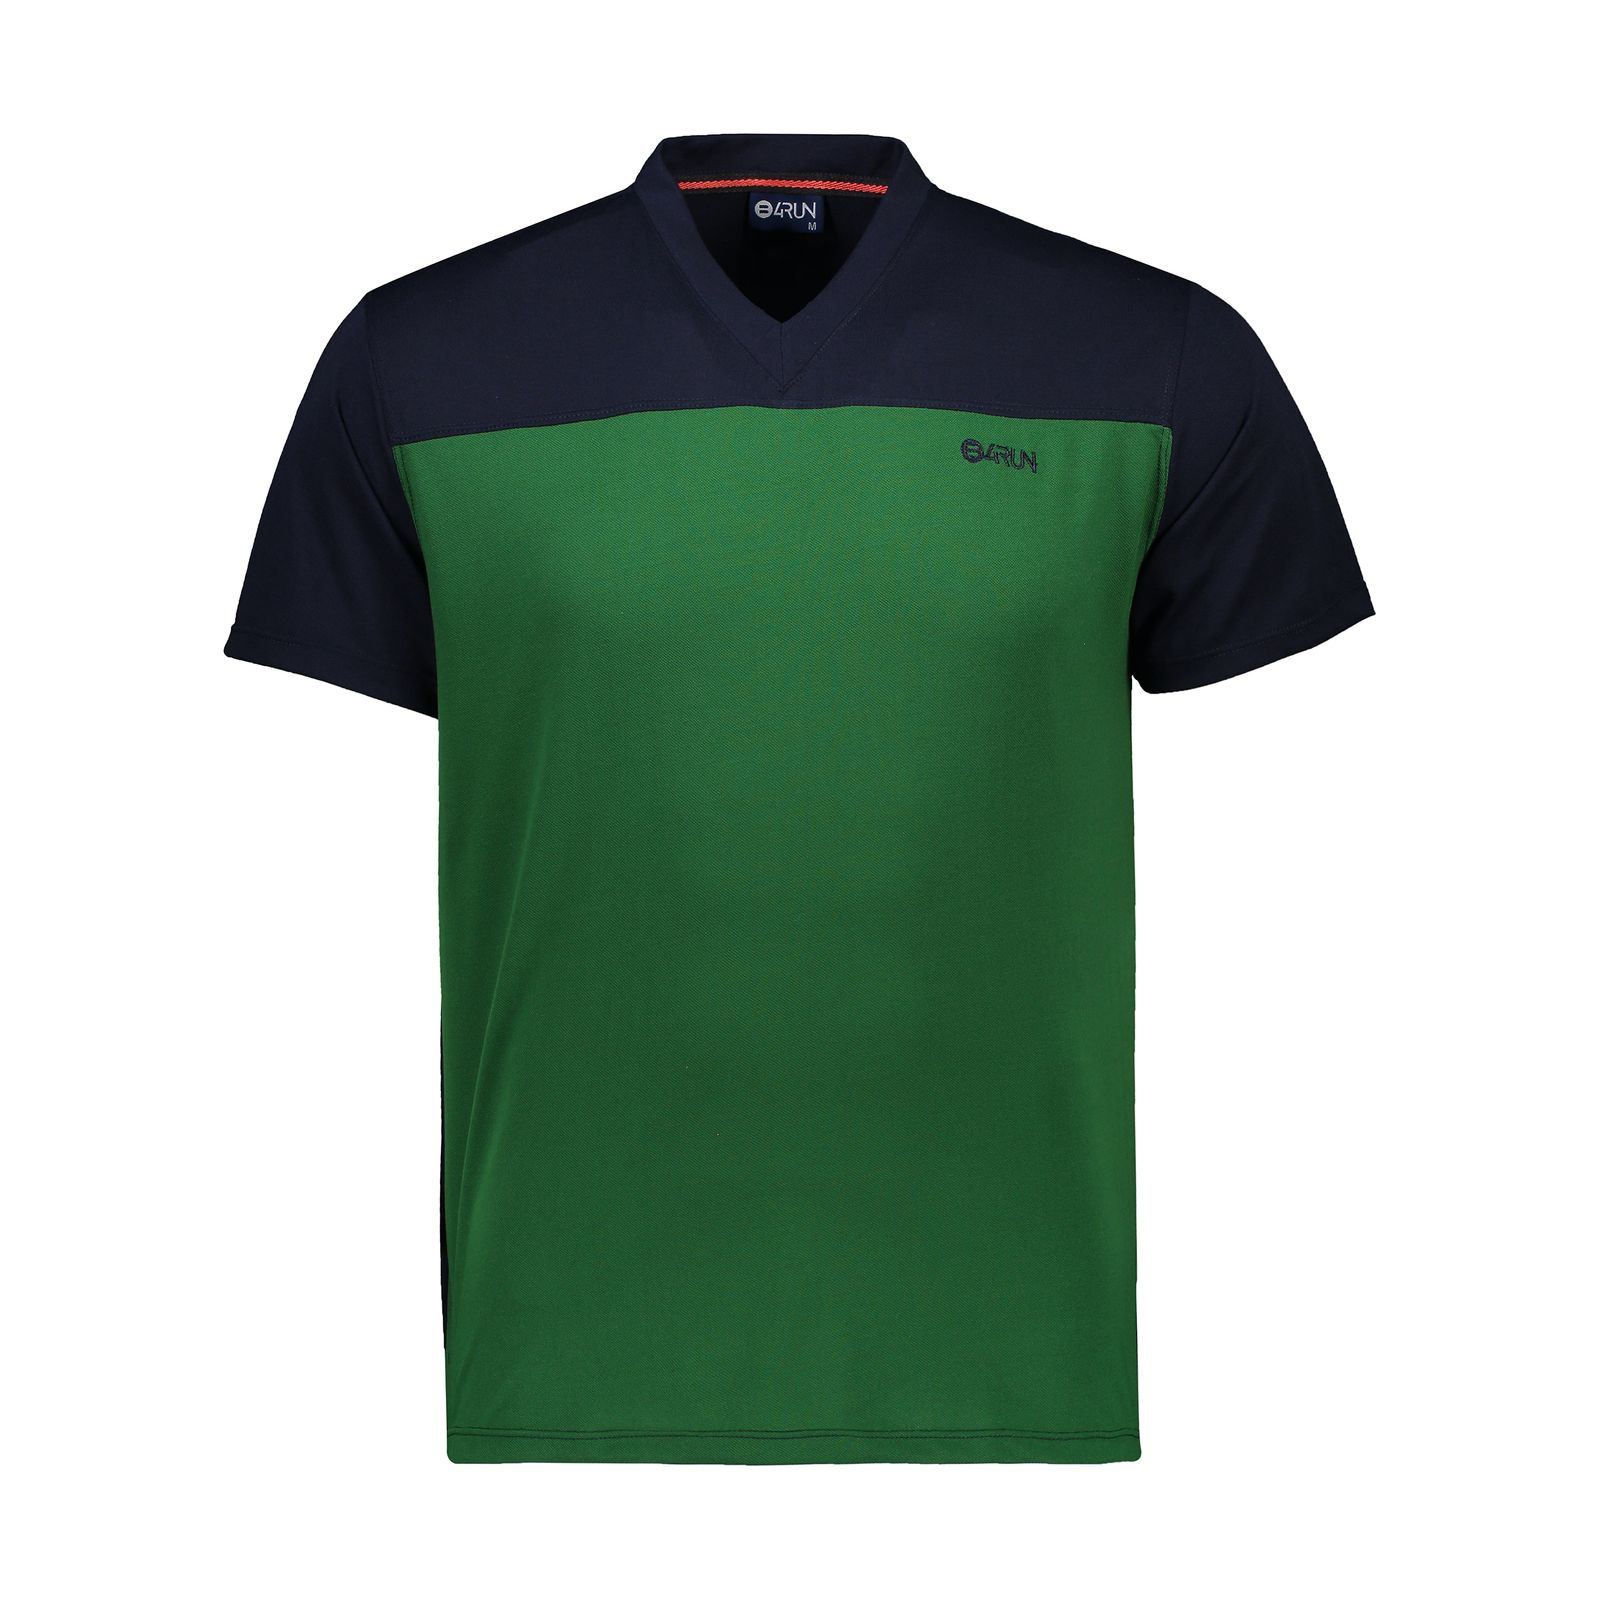 تی شرت ورزشی مردانه بی فور ران مدل 980317-5943 - سرمه ای - سبز - 1